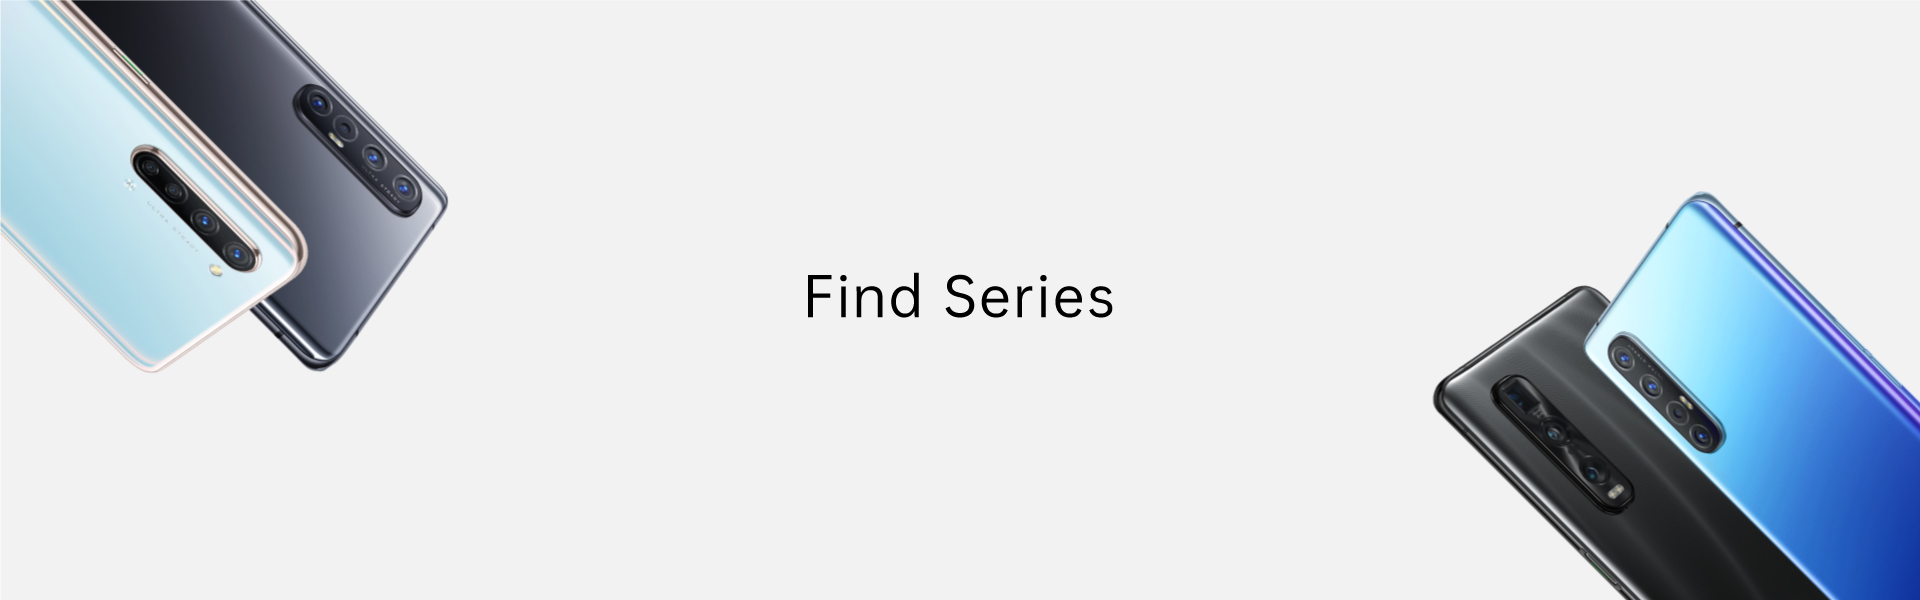 Find Series